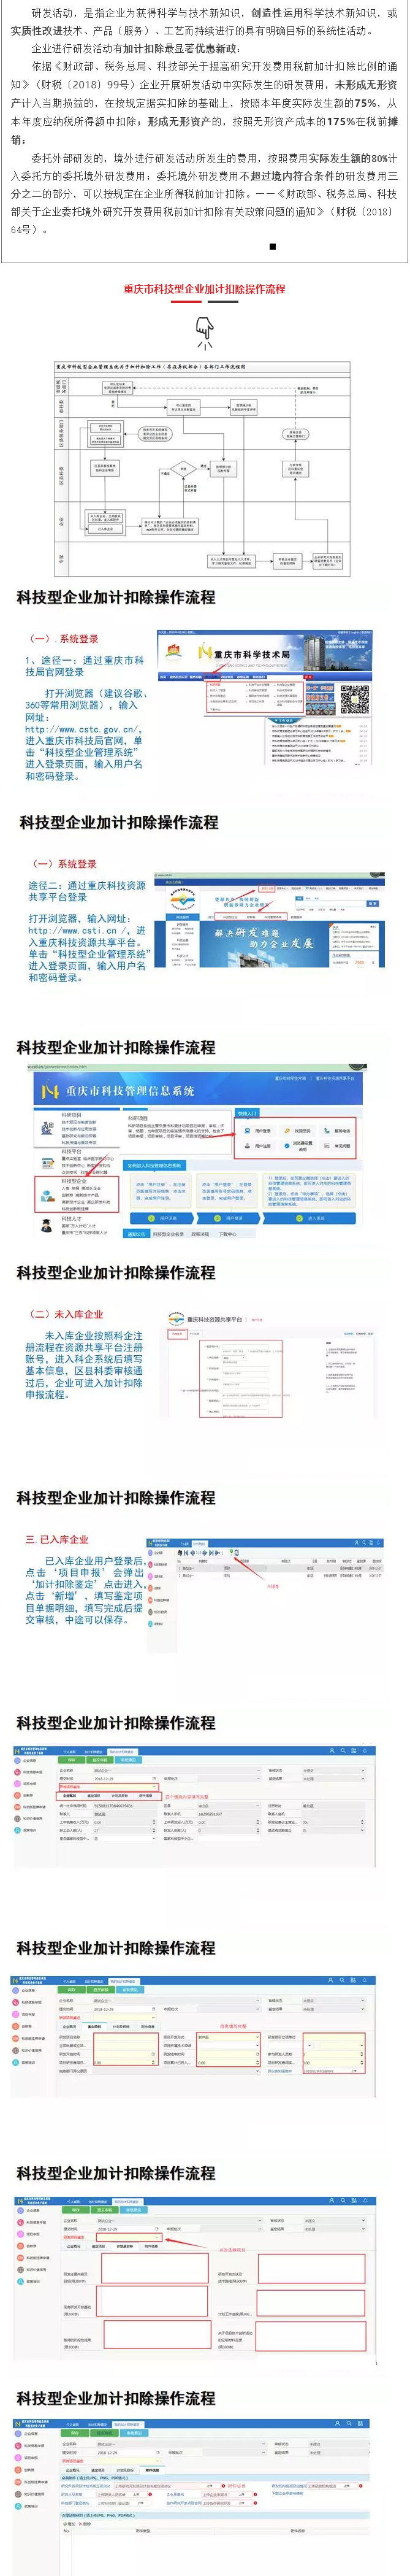 重庆市科技型企业加计扣除操作流程